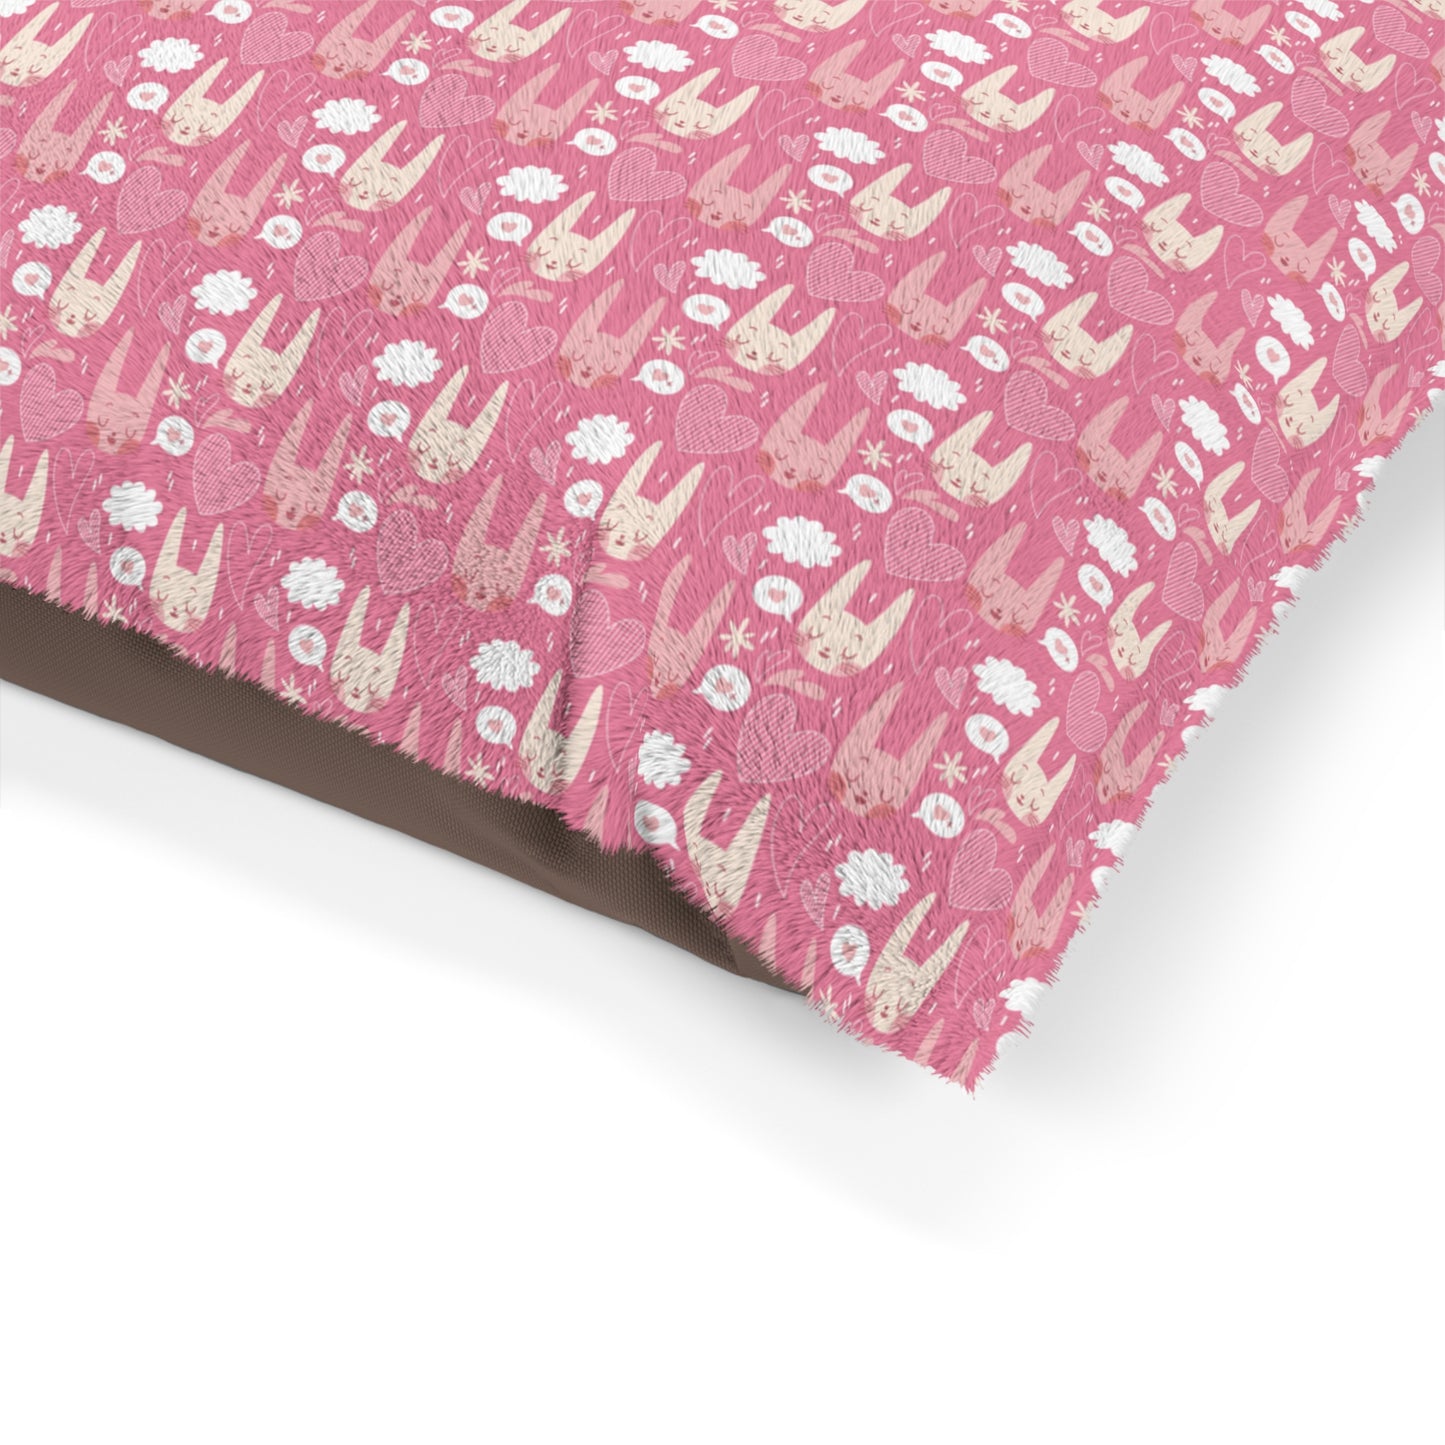 Niccie's Pink Cat Print Pet Bed Comfort for Felines